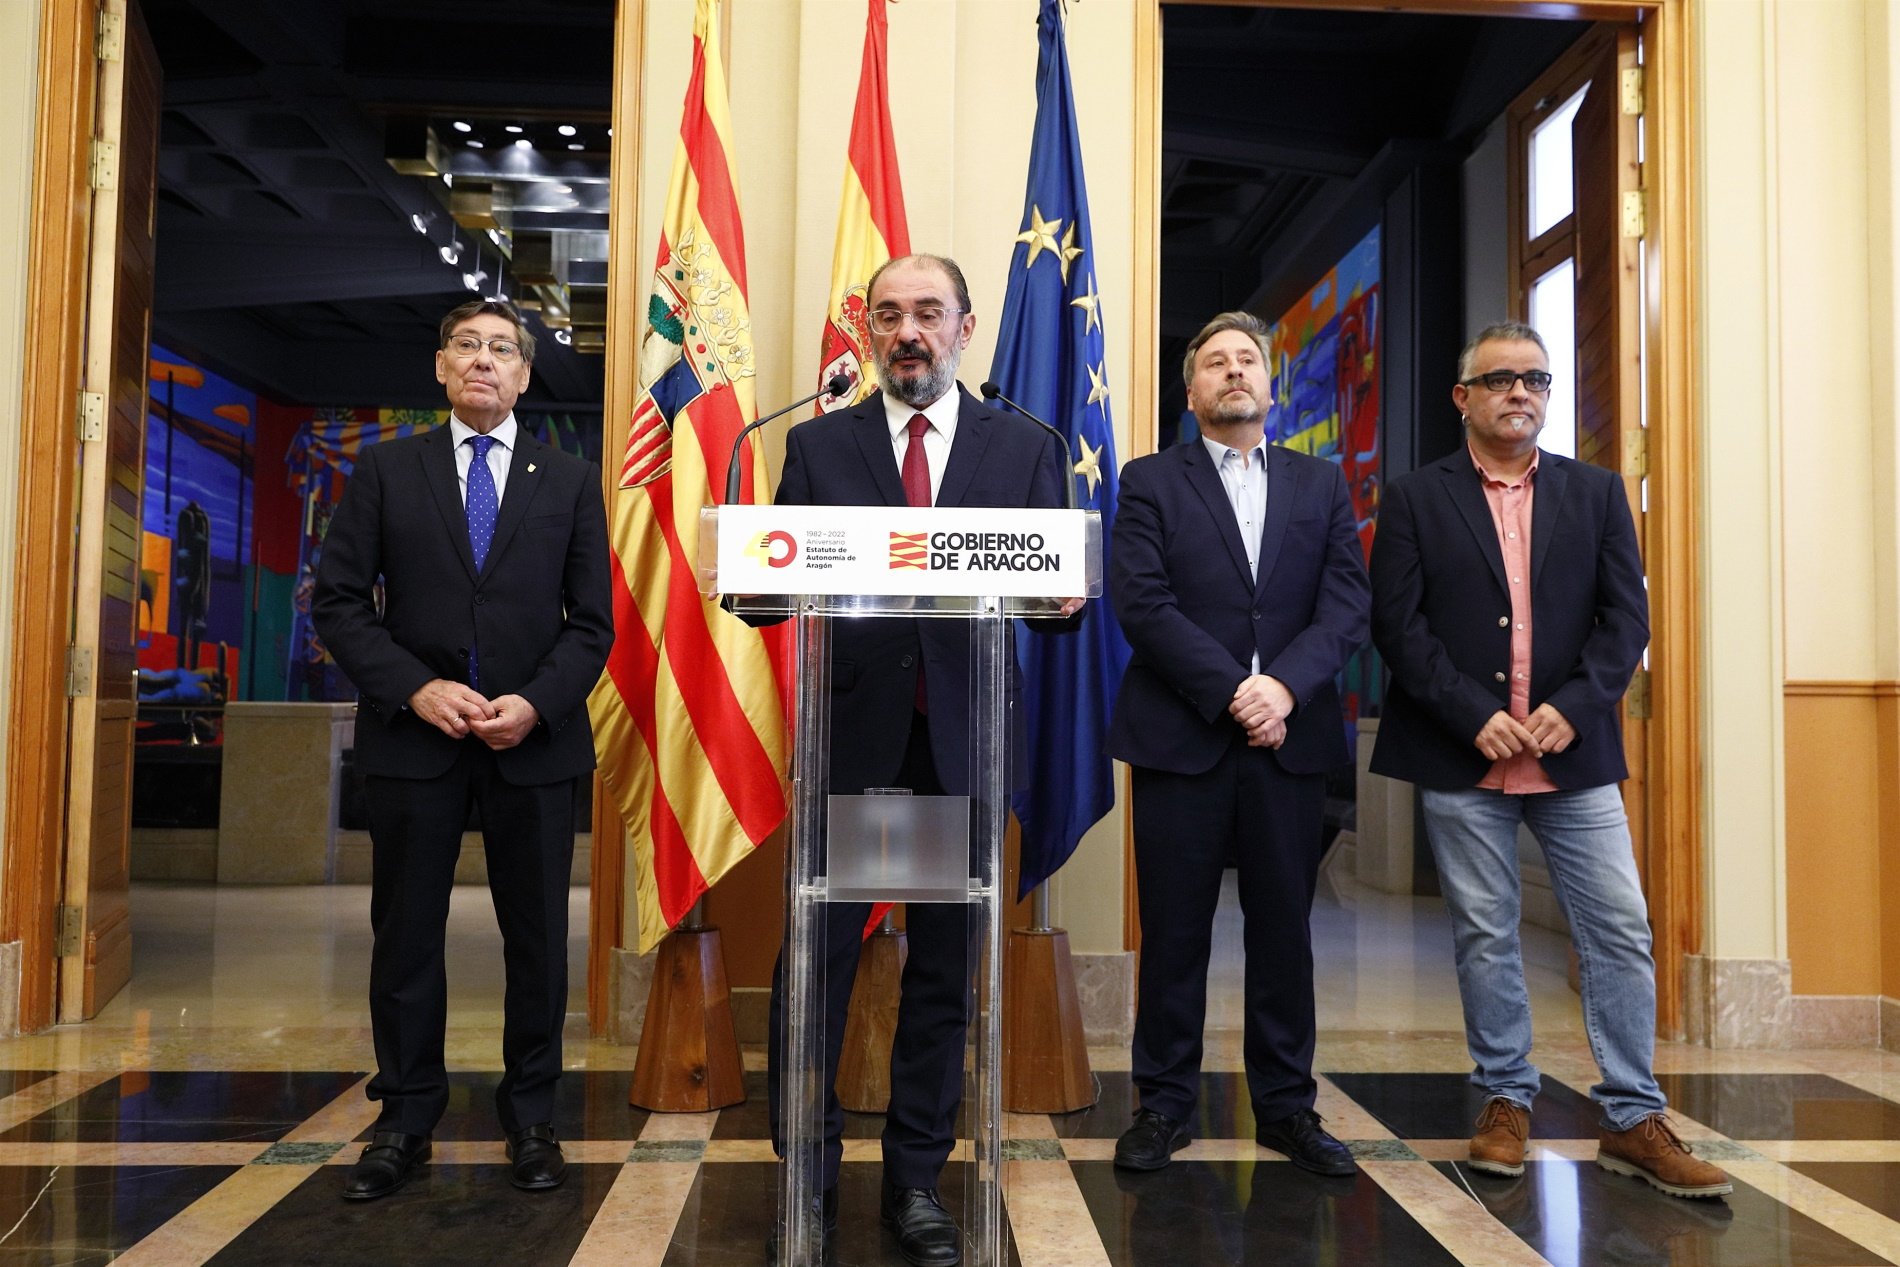 Javier Lambán torna a desbarrar amb la reforma de la sedició: demana "armar més l'Estat"